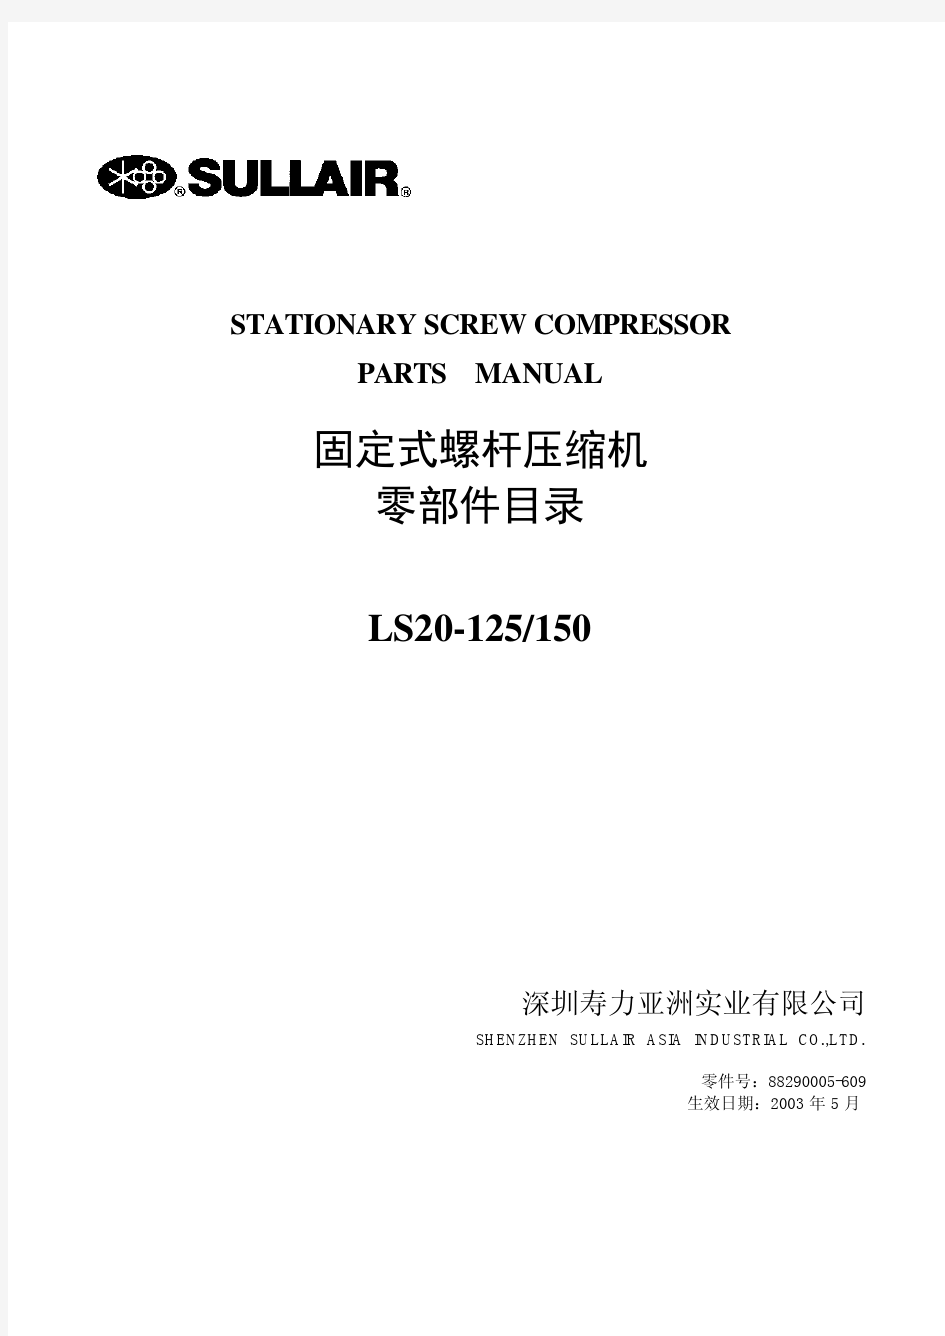 寿力空压机零部件目录(LS20-125-150)